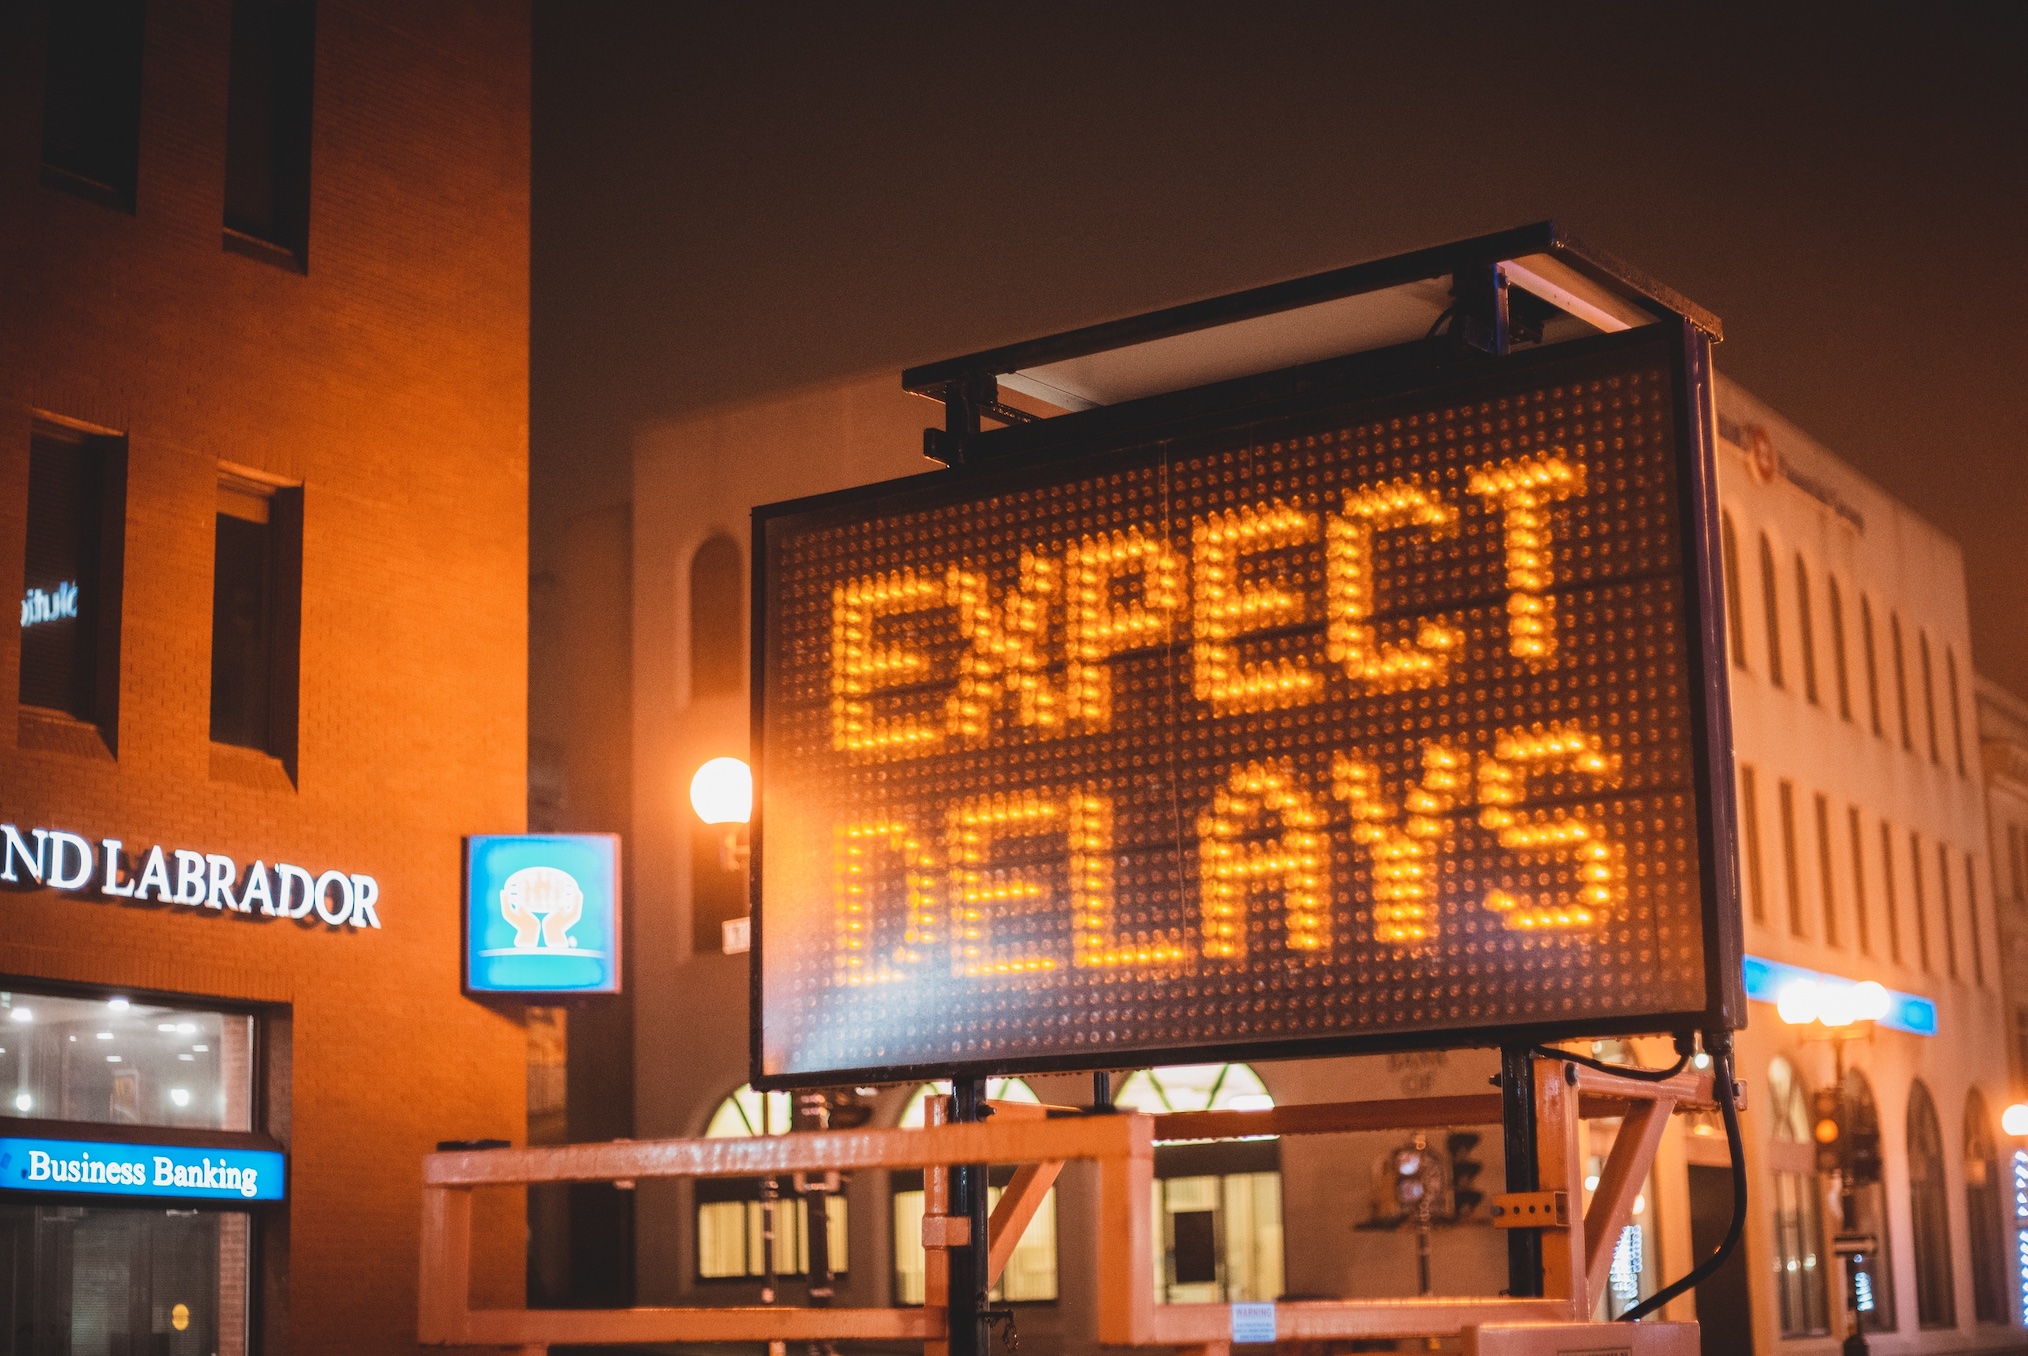 Expect delays sign; image by Erik McLean, via Unsplash.com.